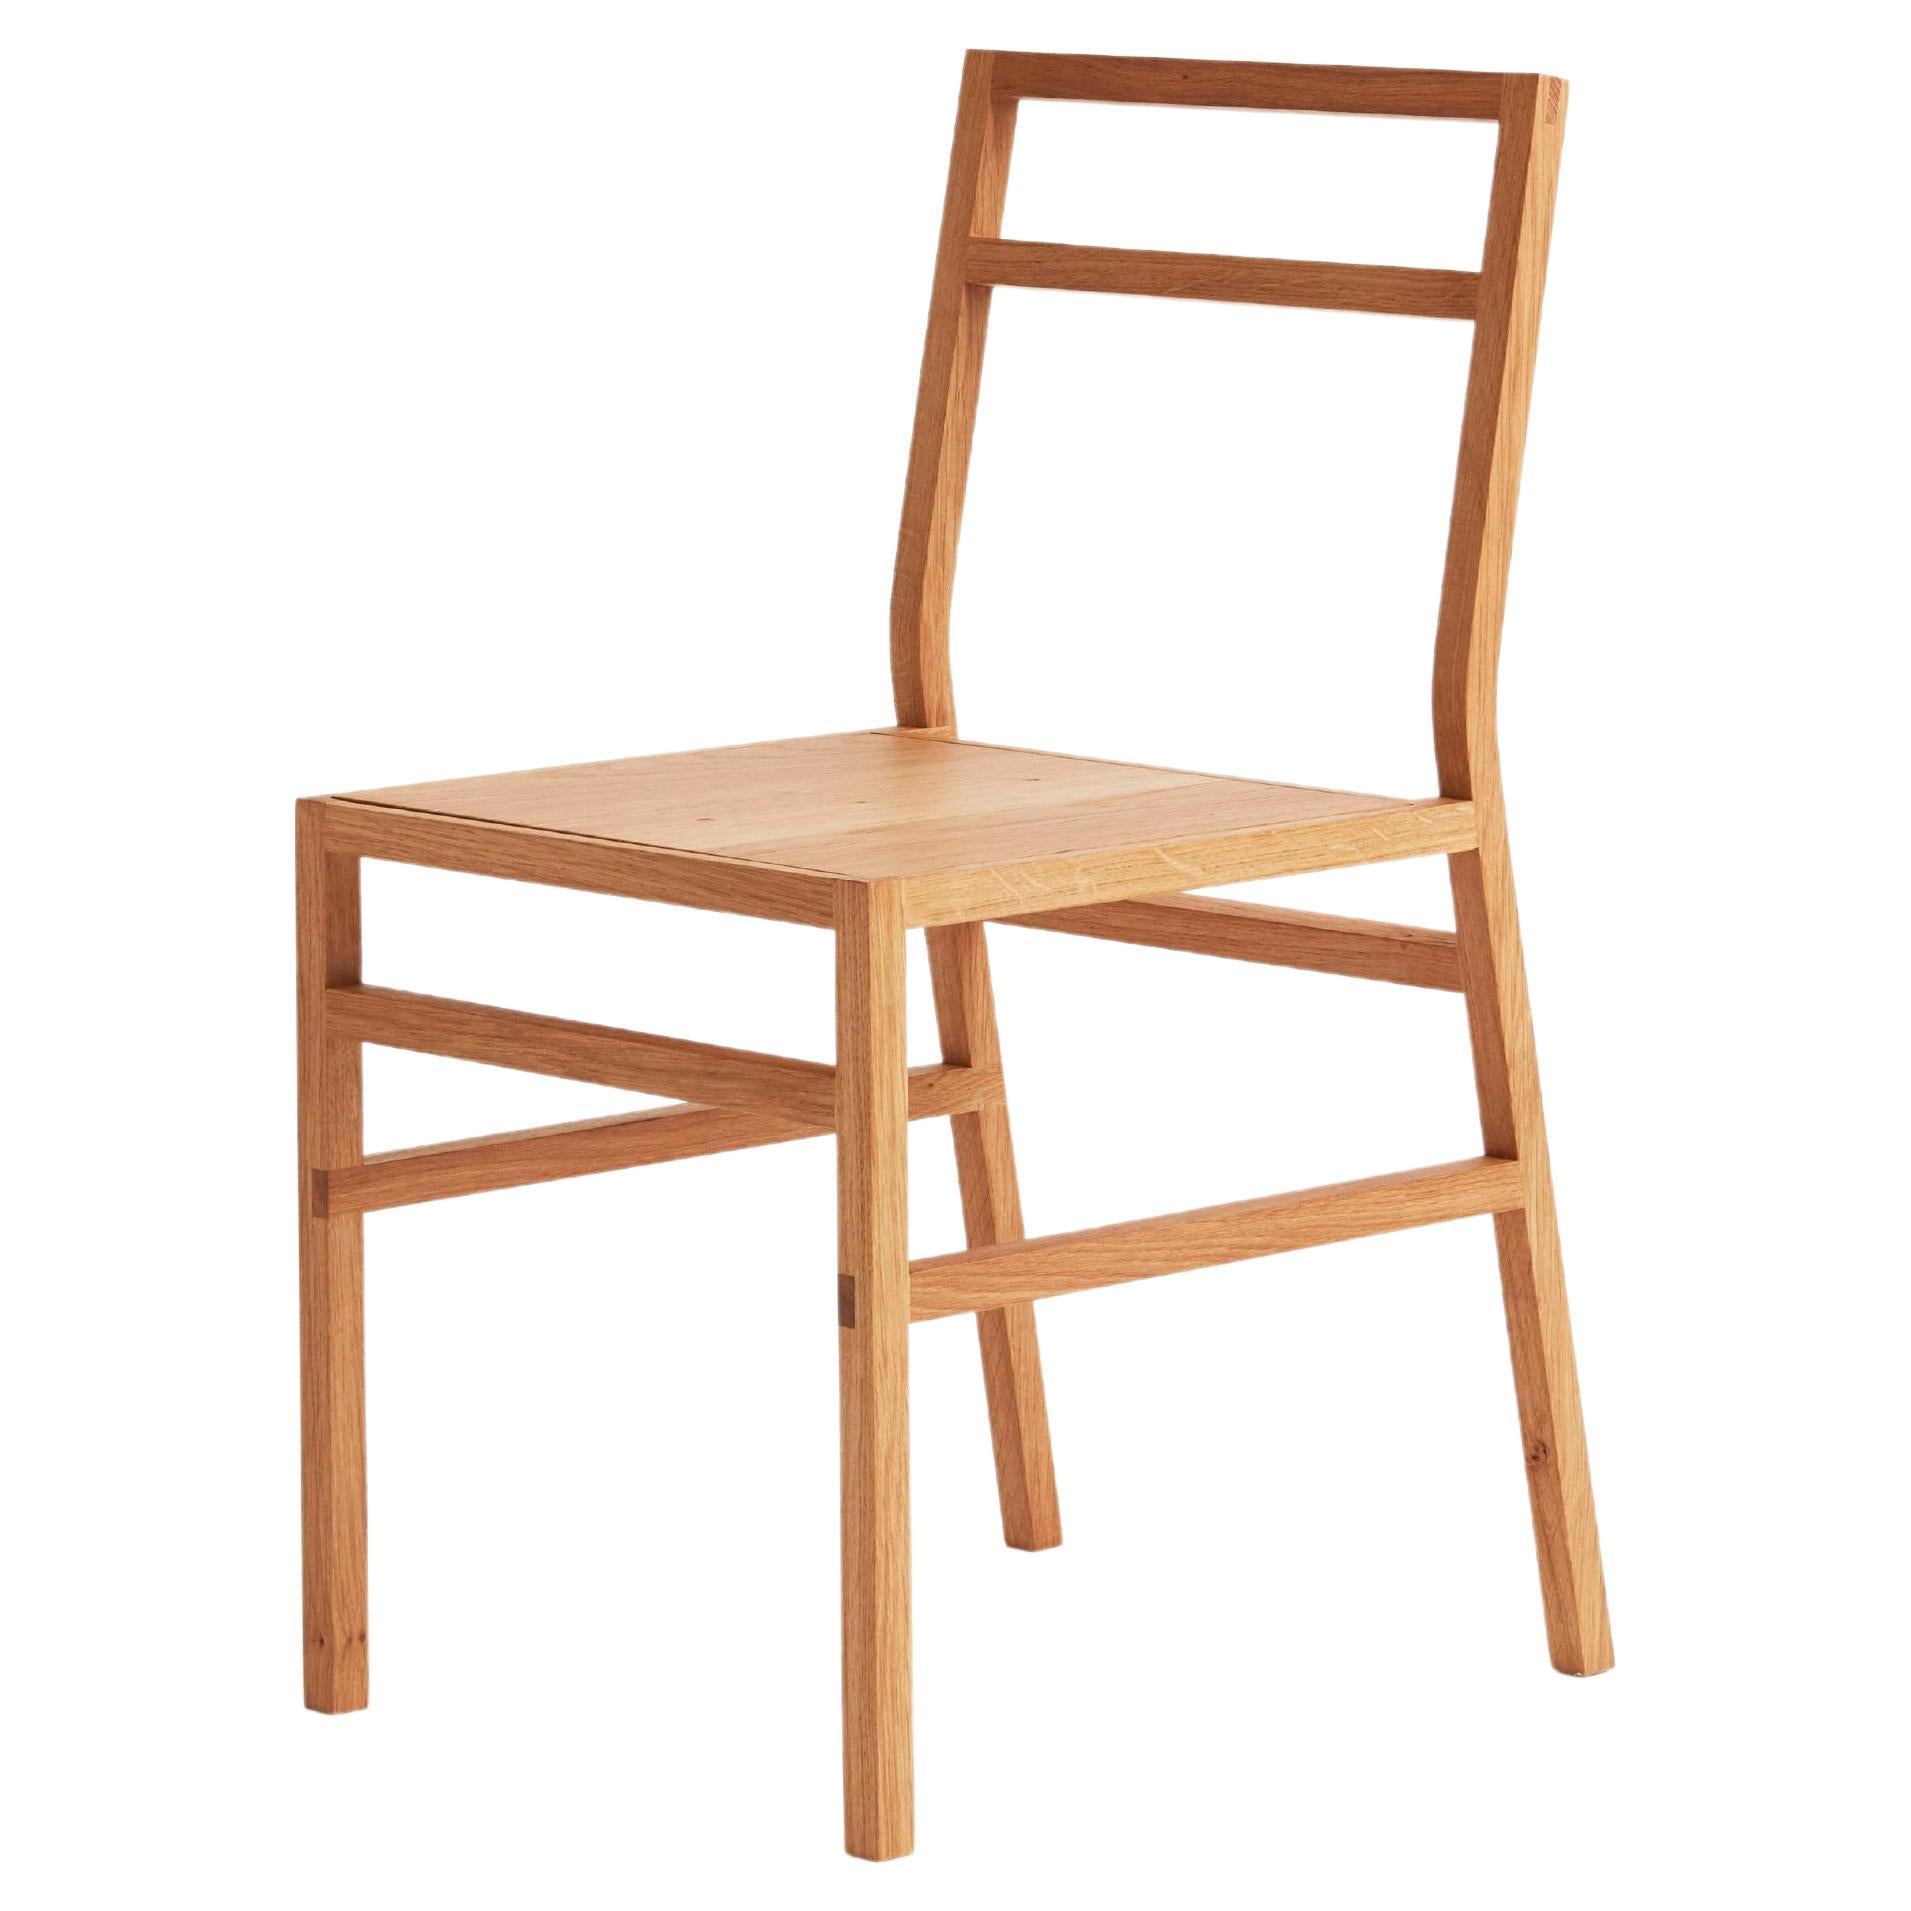 Organic Modernity Dining Chair, Solid Oak, Wood, Handmade, Creator Loose Fit, UK (chaise de salle à manger organique moderne, en chêne massif, en bois, faite à la main)